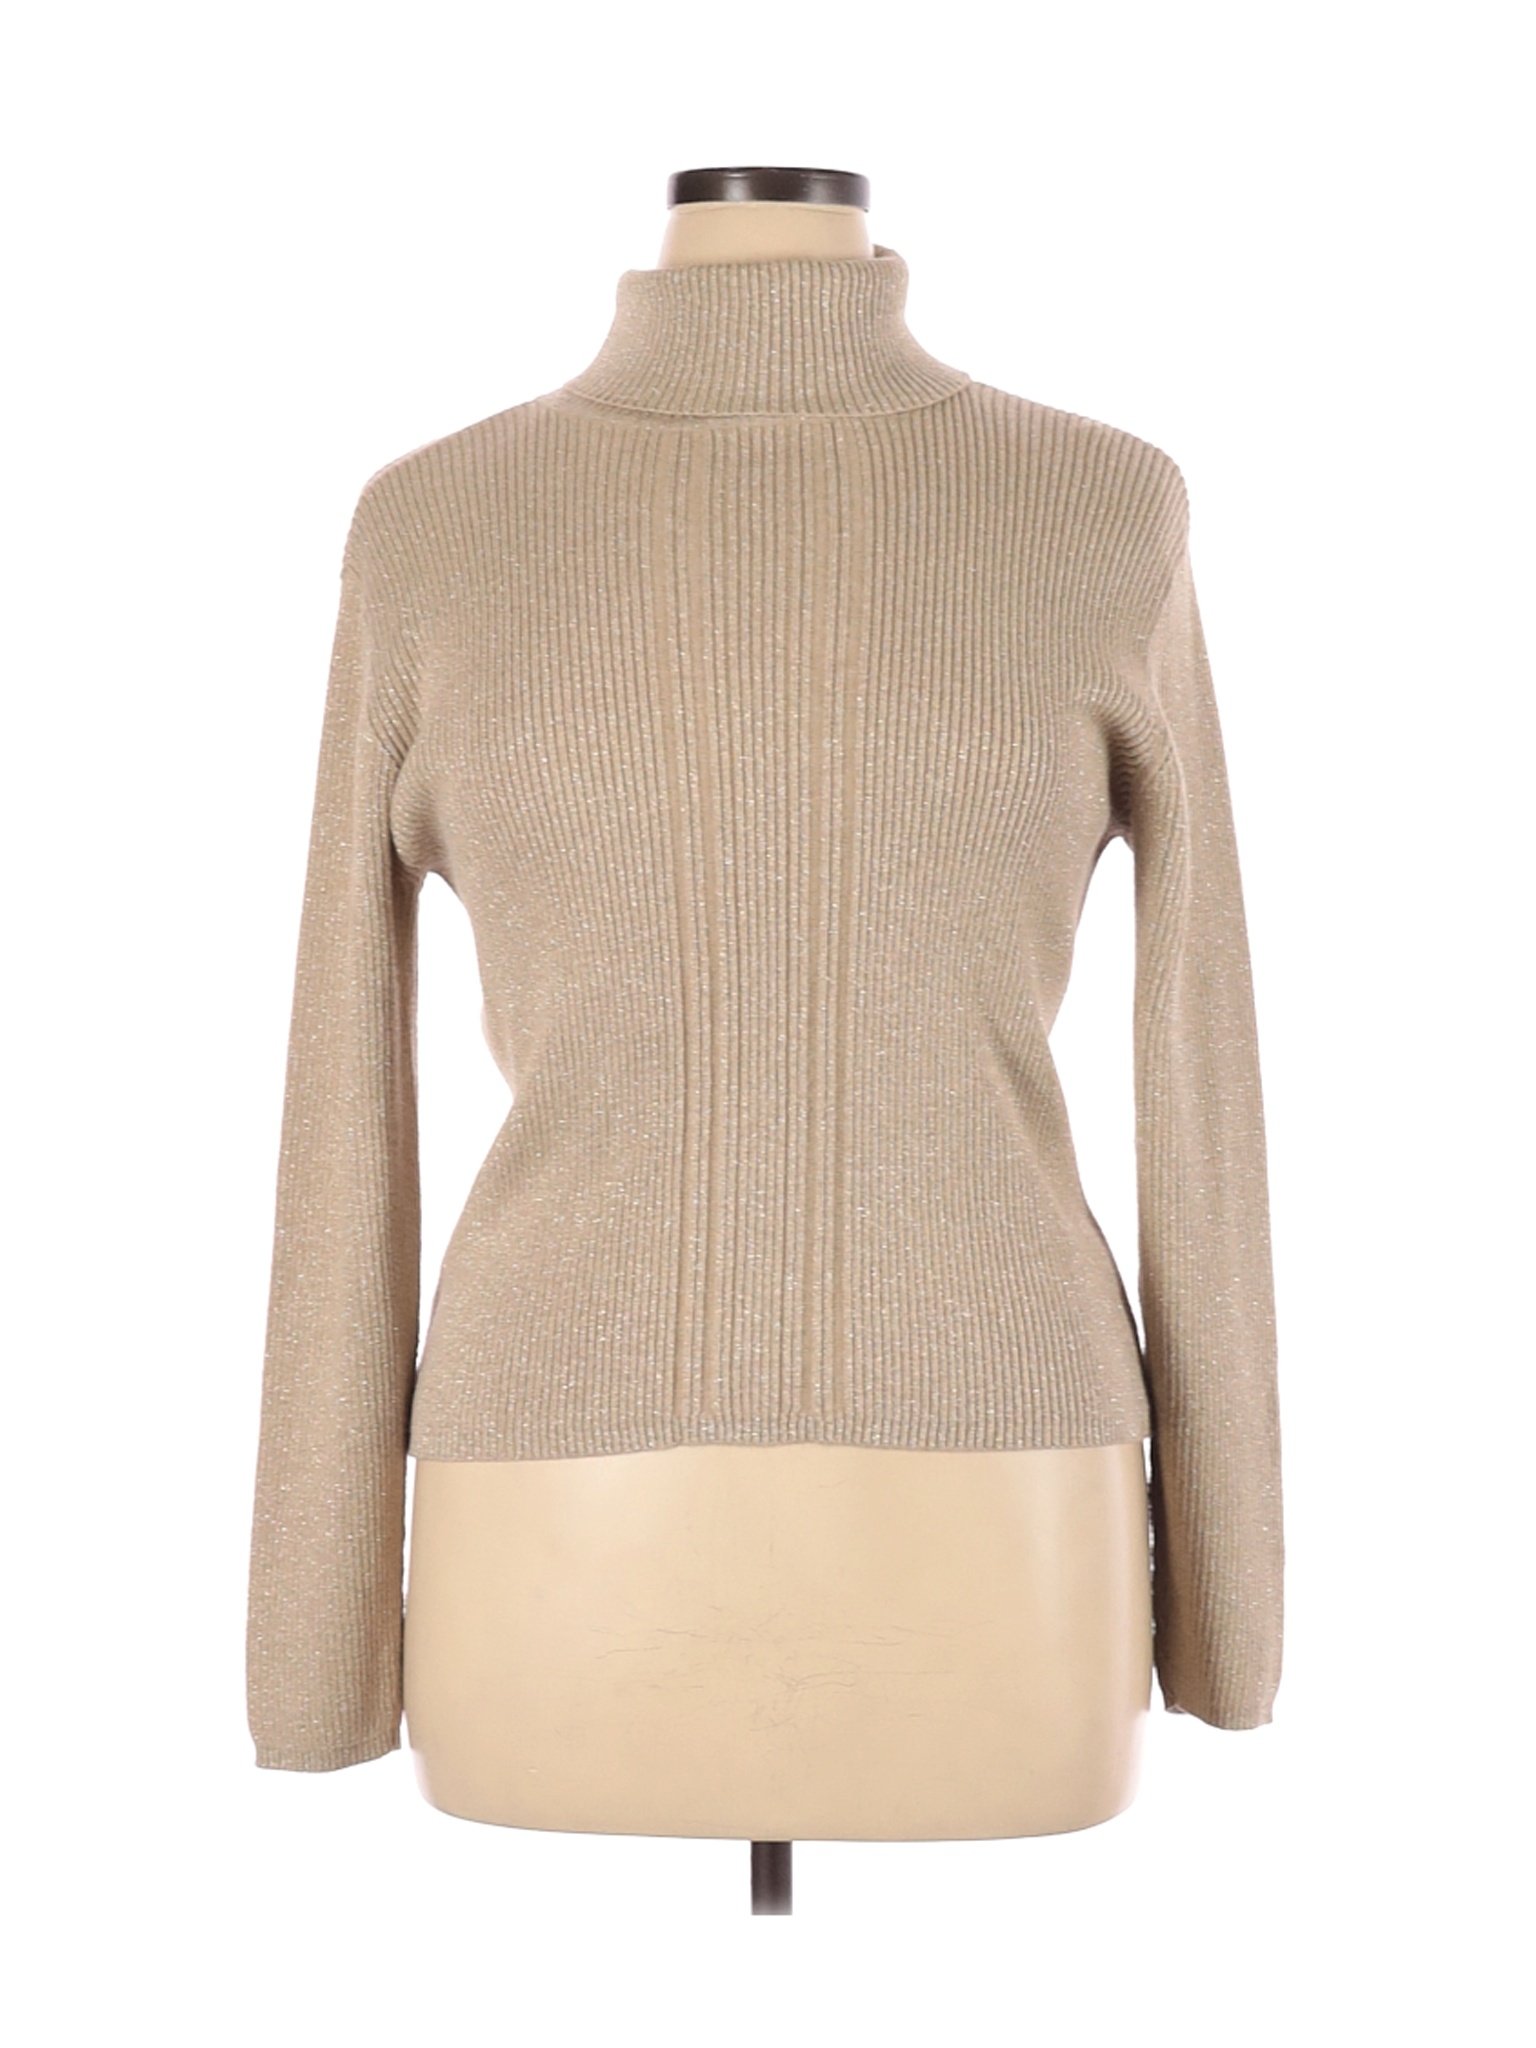 Liz Claiborne Women Brown Turtleneck Sweater XL | eBay